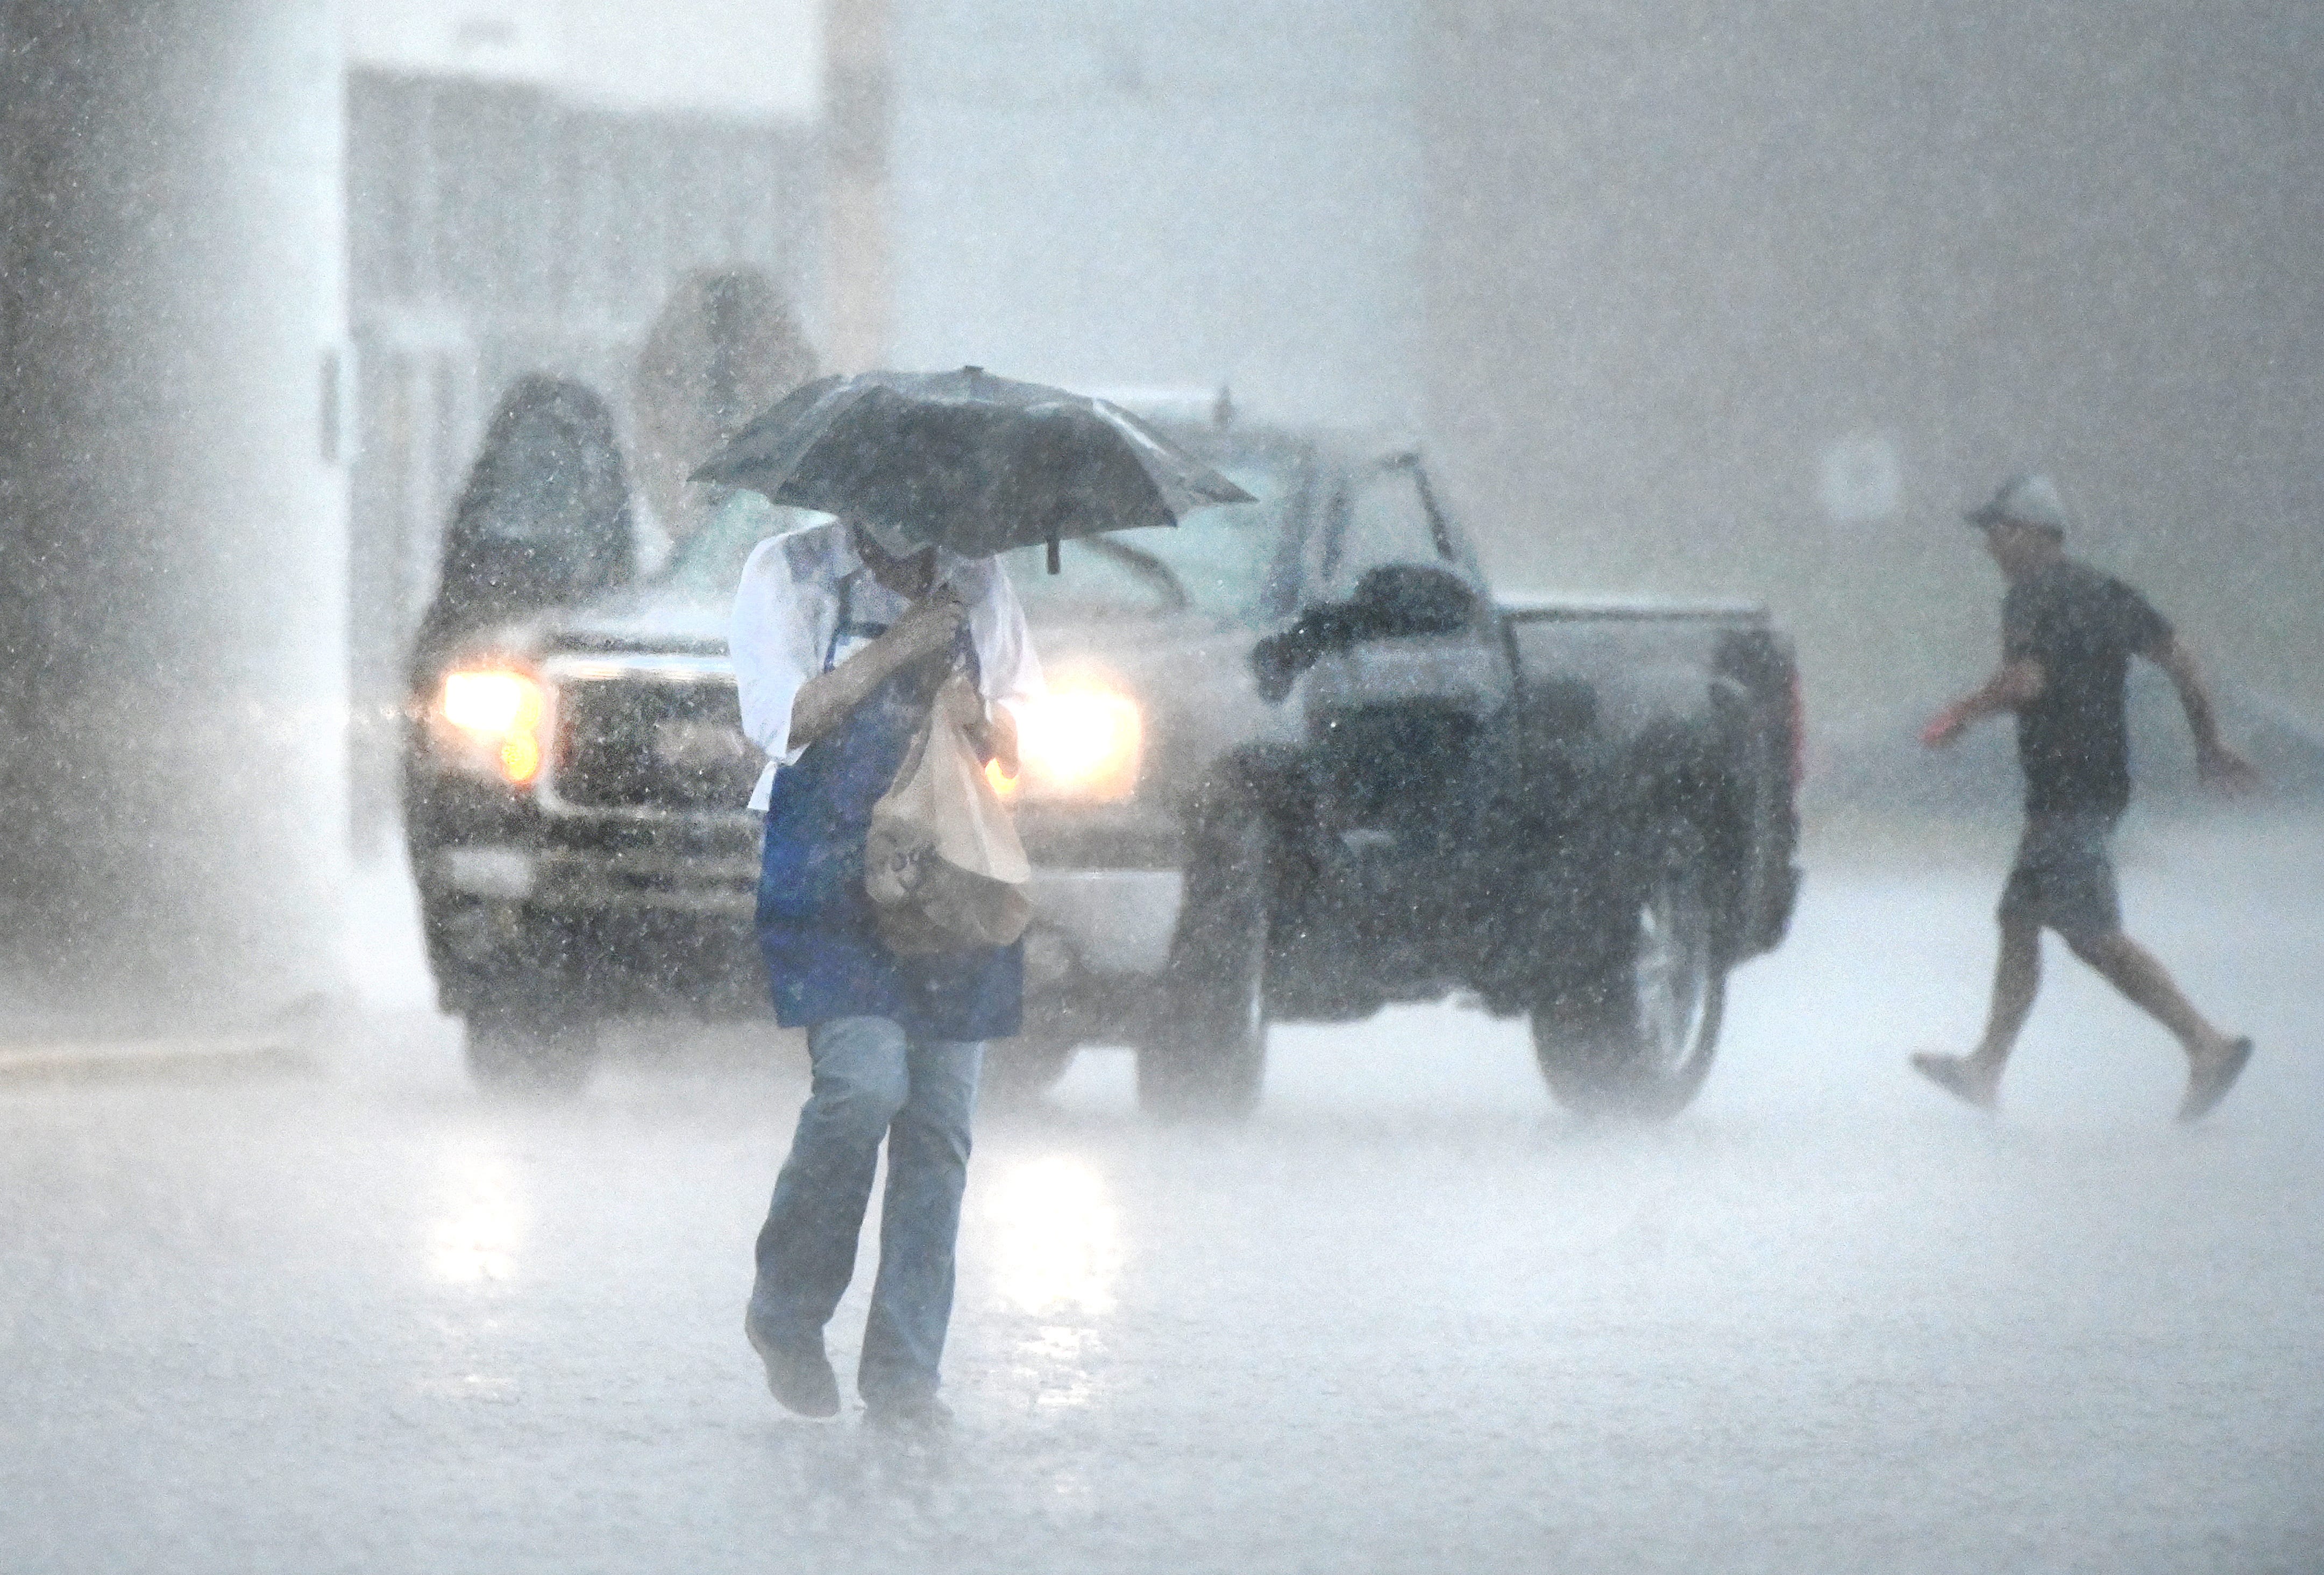 Heavy rain hits shoppers outside a Kroger supermarket in Warren on Wednesday, June 10, 2020.